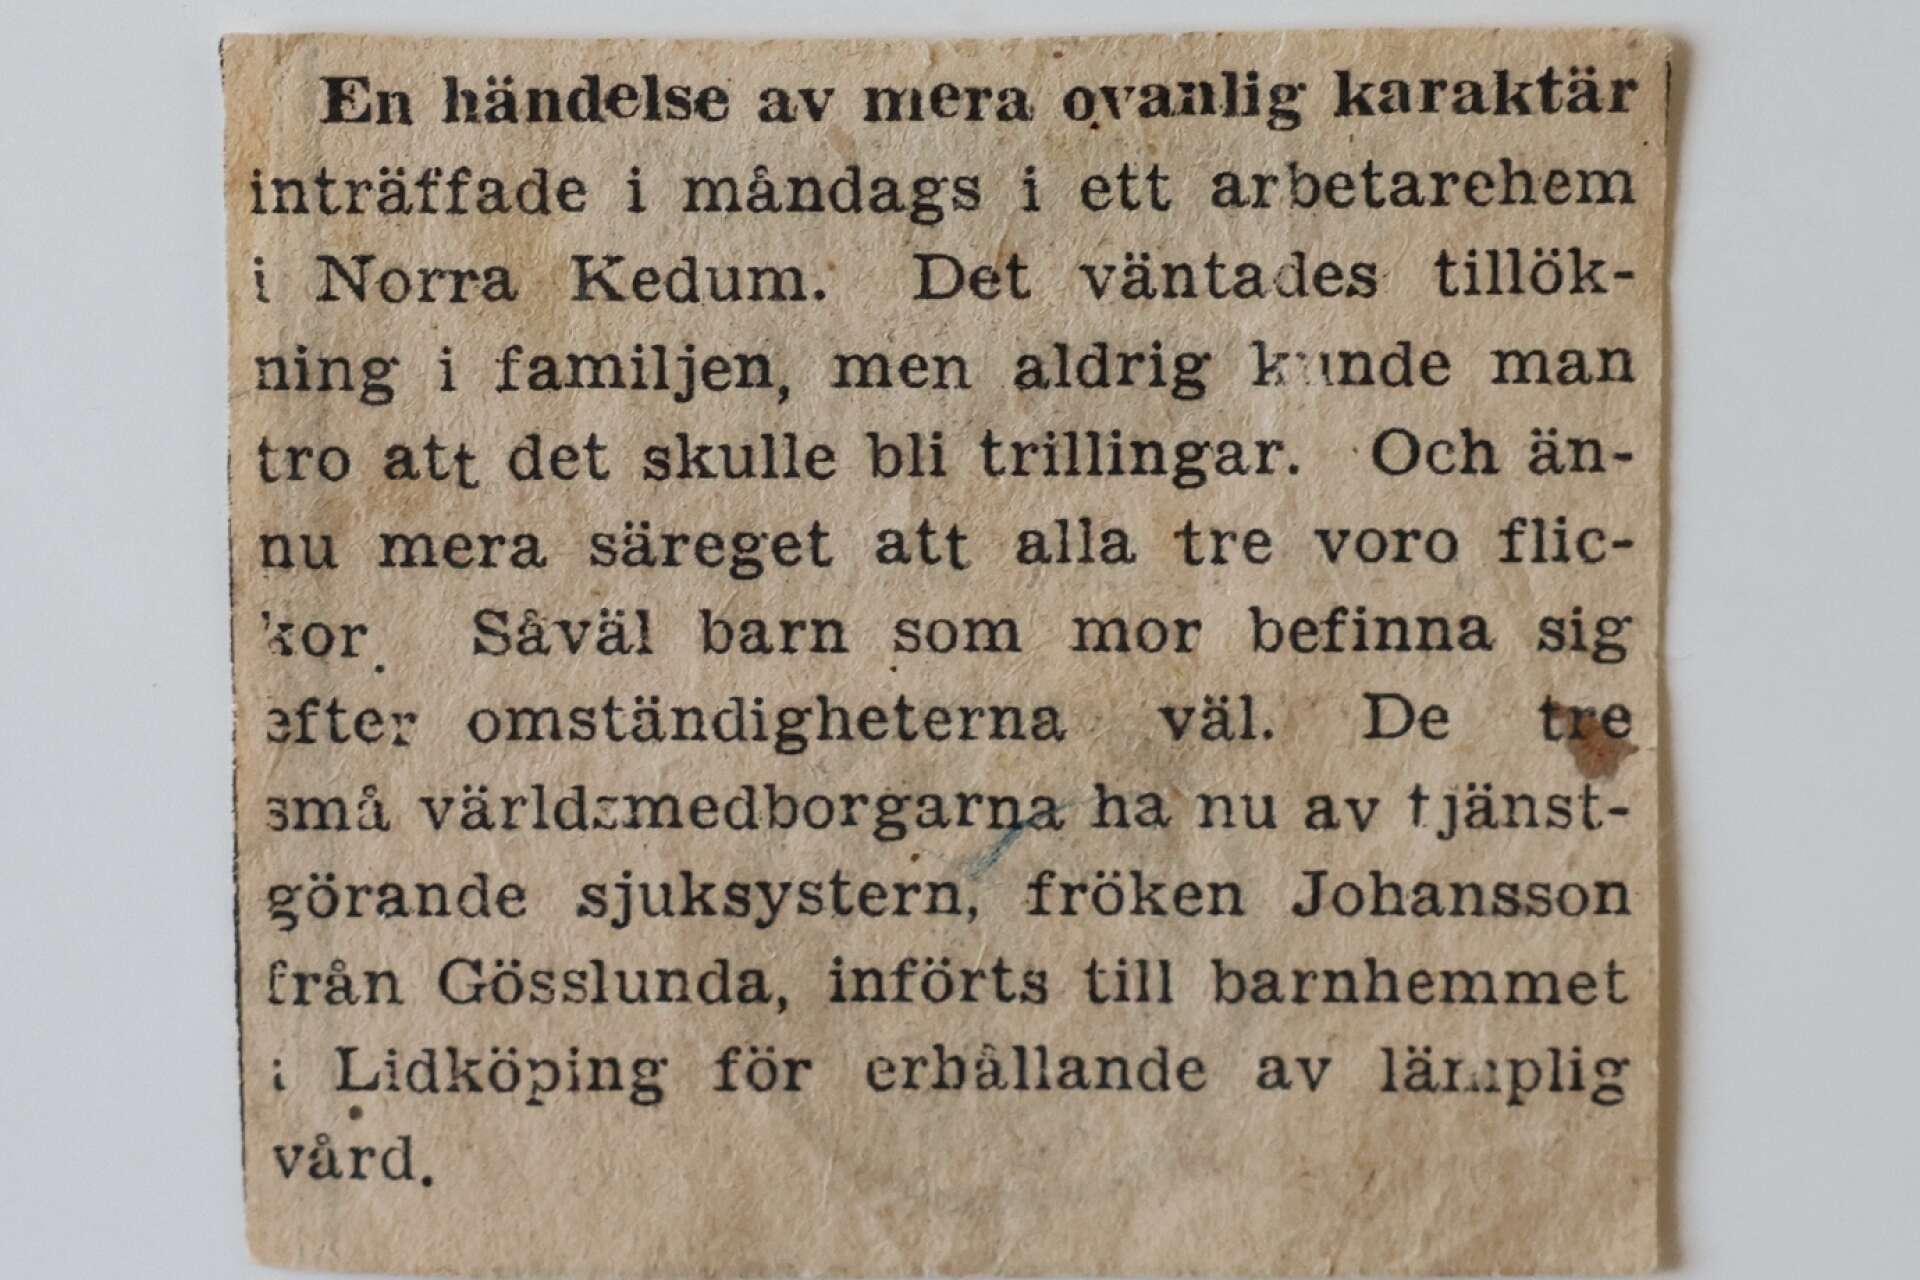 13 januari 1939 skriver Nya Lidköpingstidningen om ”En händelse av mera ovanlig karaktär”.